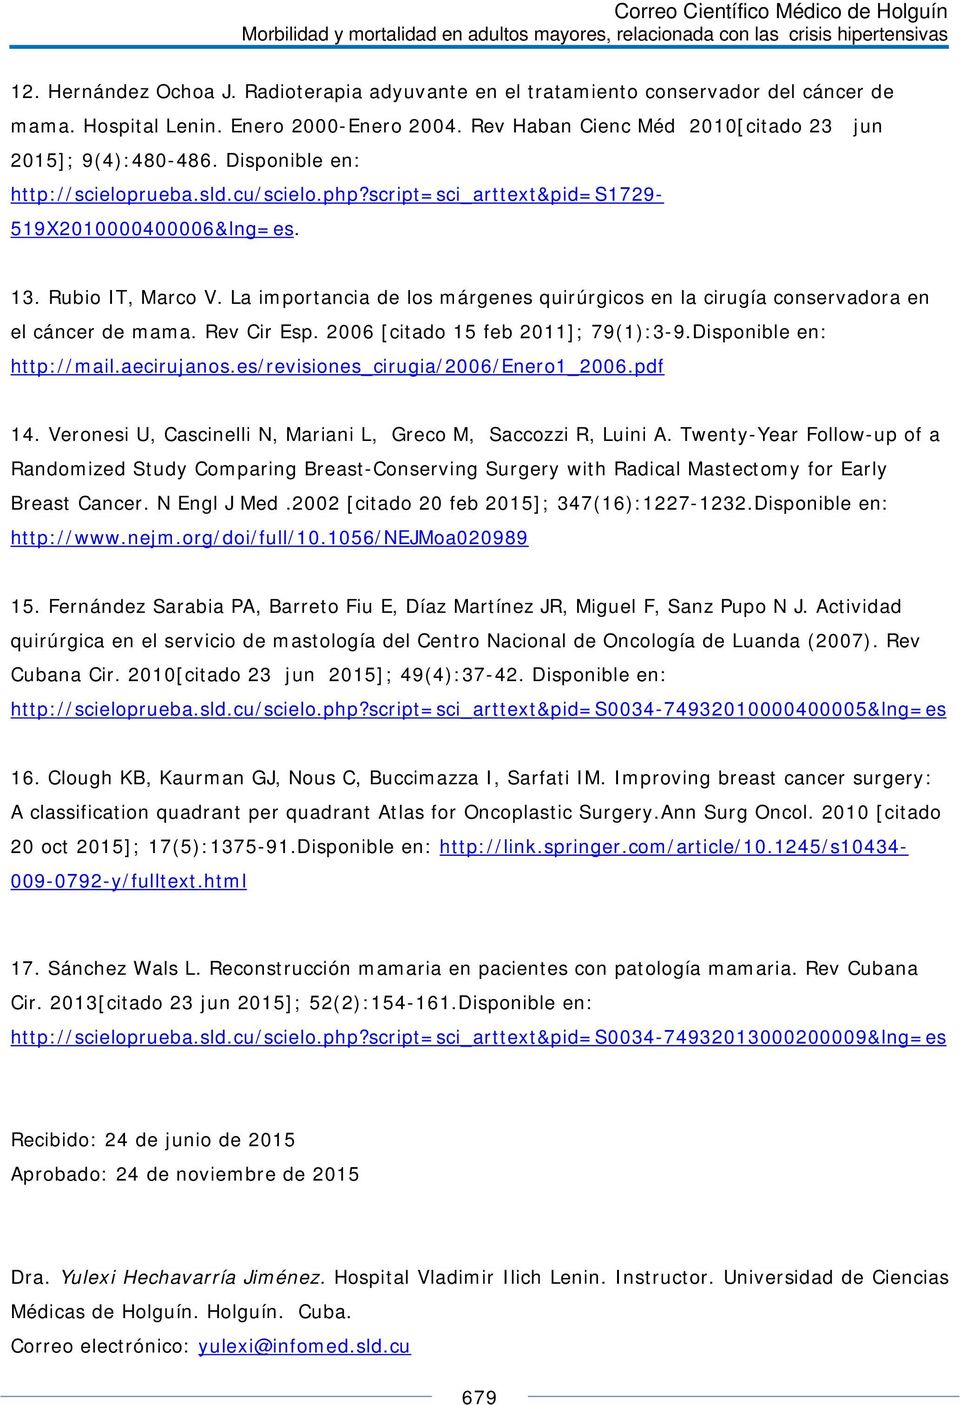 La importancia de los márgenes quirúrgicos en la cirugía conservadora en el cáncer de mama. Rev Cir Esp. 2006 [citado 15 feb 2011]; 79(1):3-9.Disponible en: http://mail.aecirujanos.